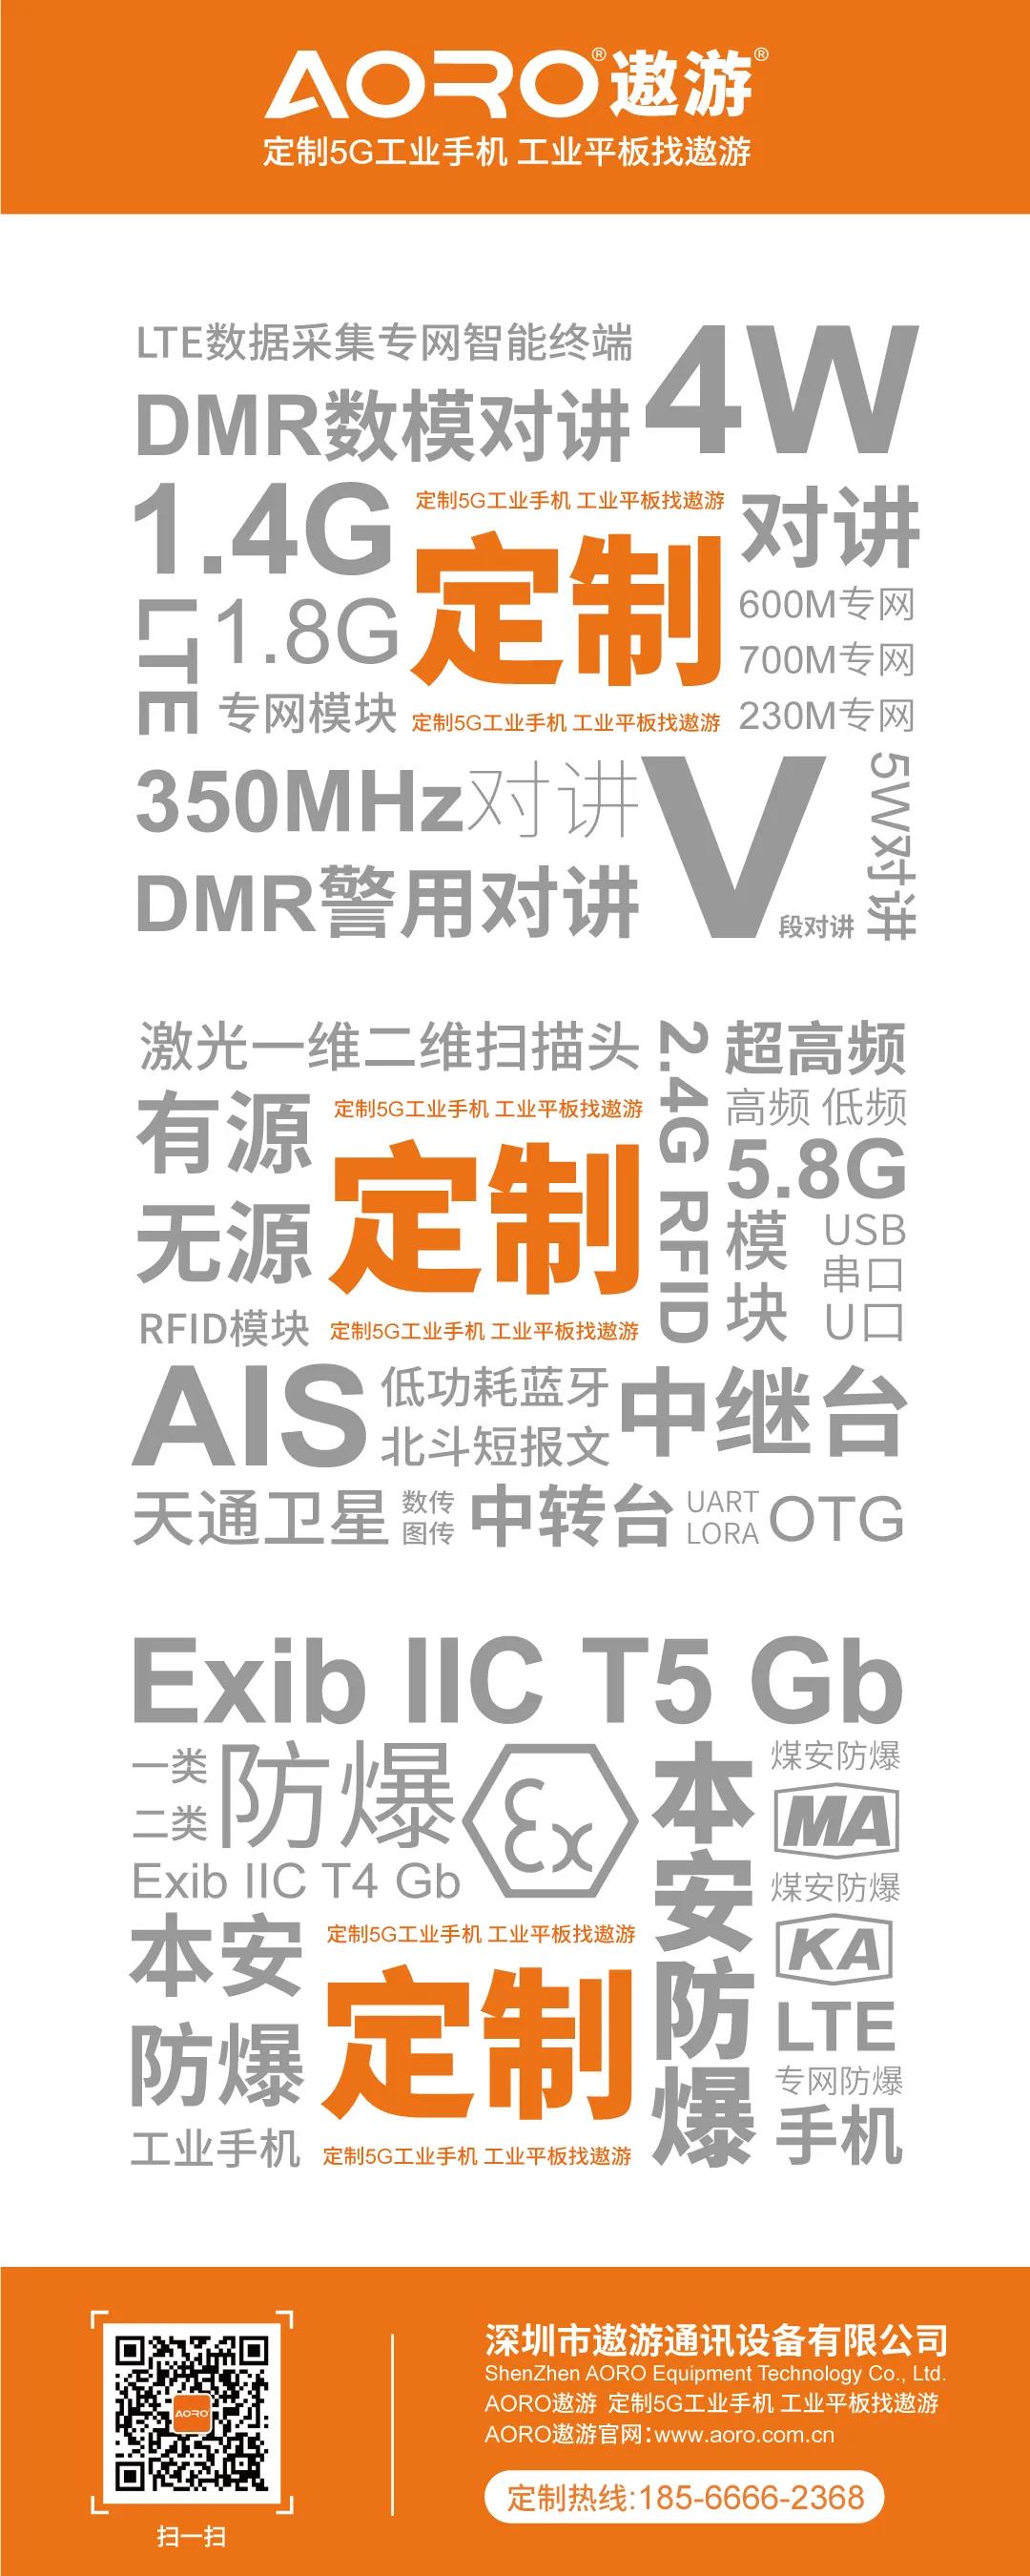 深圳市遨游通讯设备有限公司是一家专业研发、设计、生产专网手持机，智能终端的生产厂家。5G专网手持机,1.4G专网手机,V80专网车载终端,专网平板电脑,专网手机,专网PDA,多模专网机。可定制400M\600M\700M\1.4G\1.8G\3.5G\LTE-R\专网GSM-R终端。